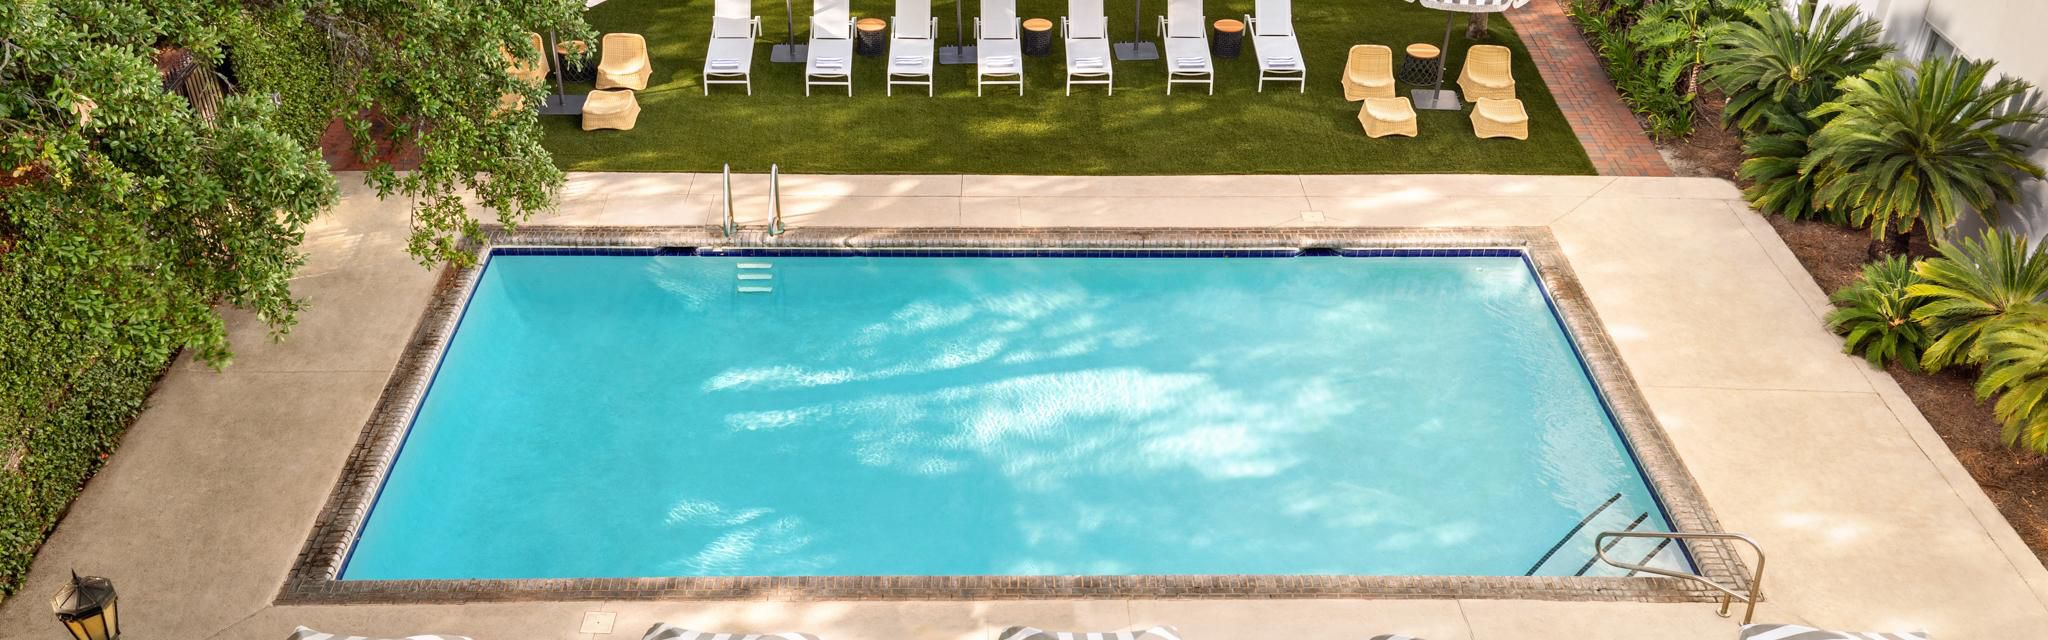 Enjoy our Pool and Pool Terrace under those sweet Savannah skies